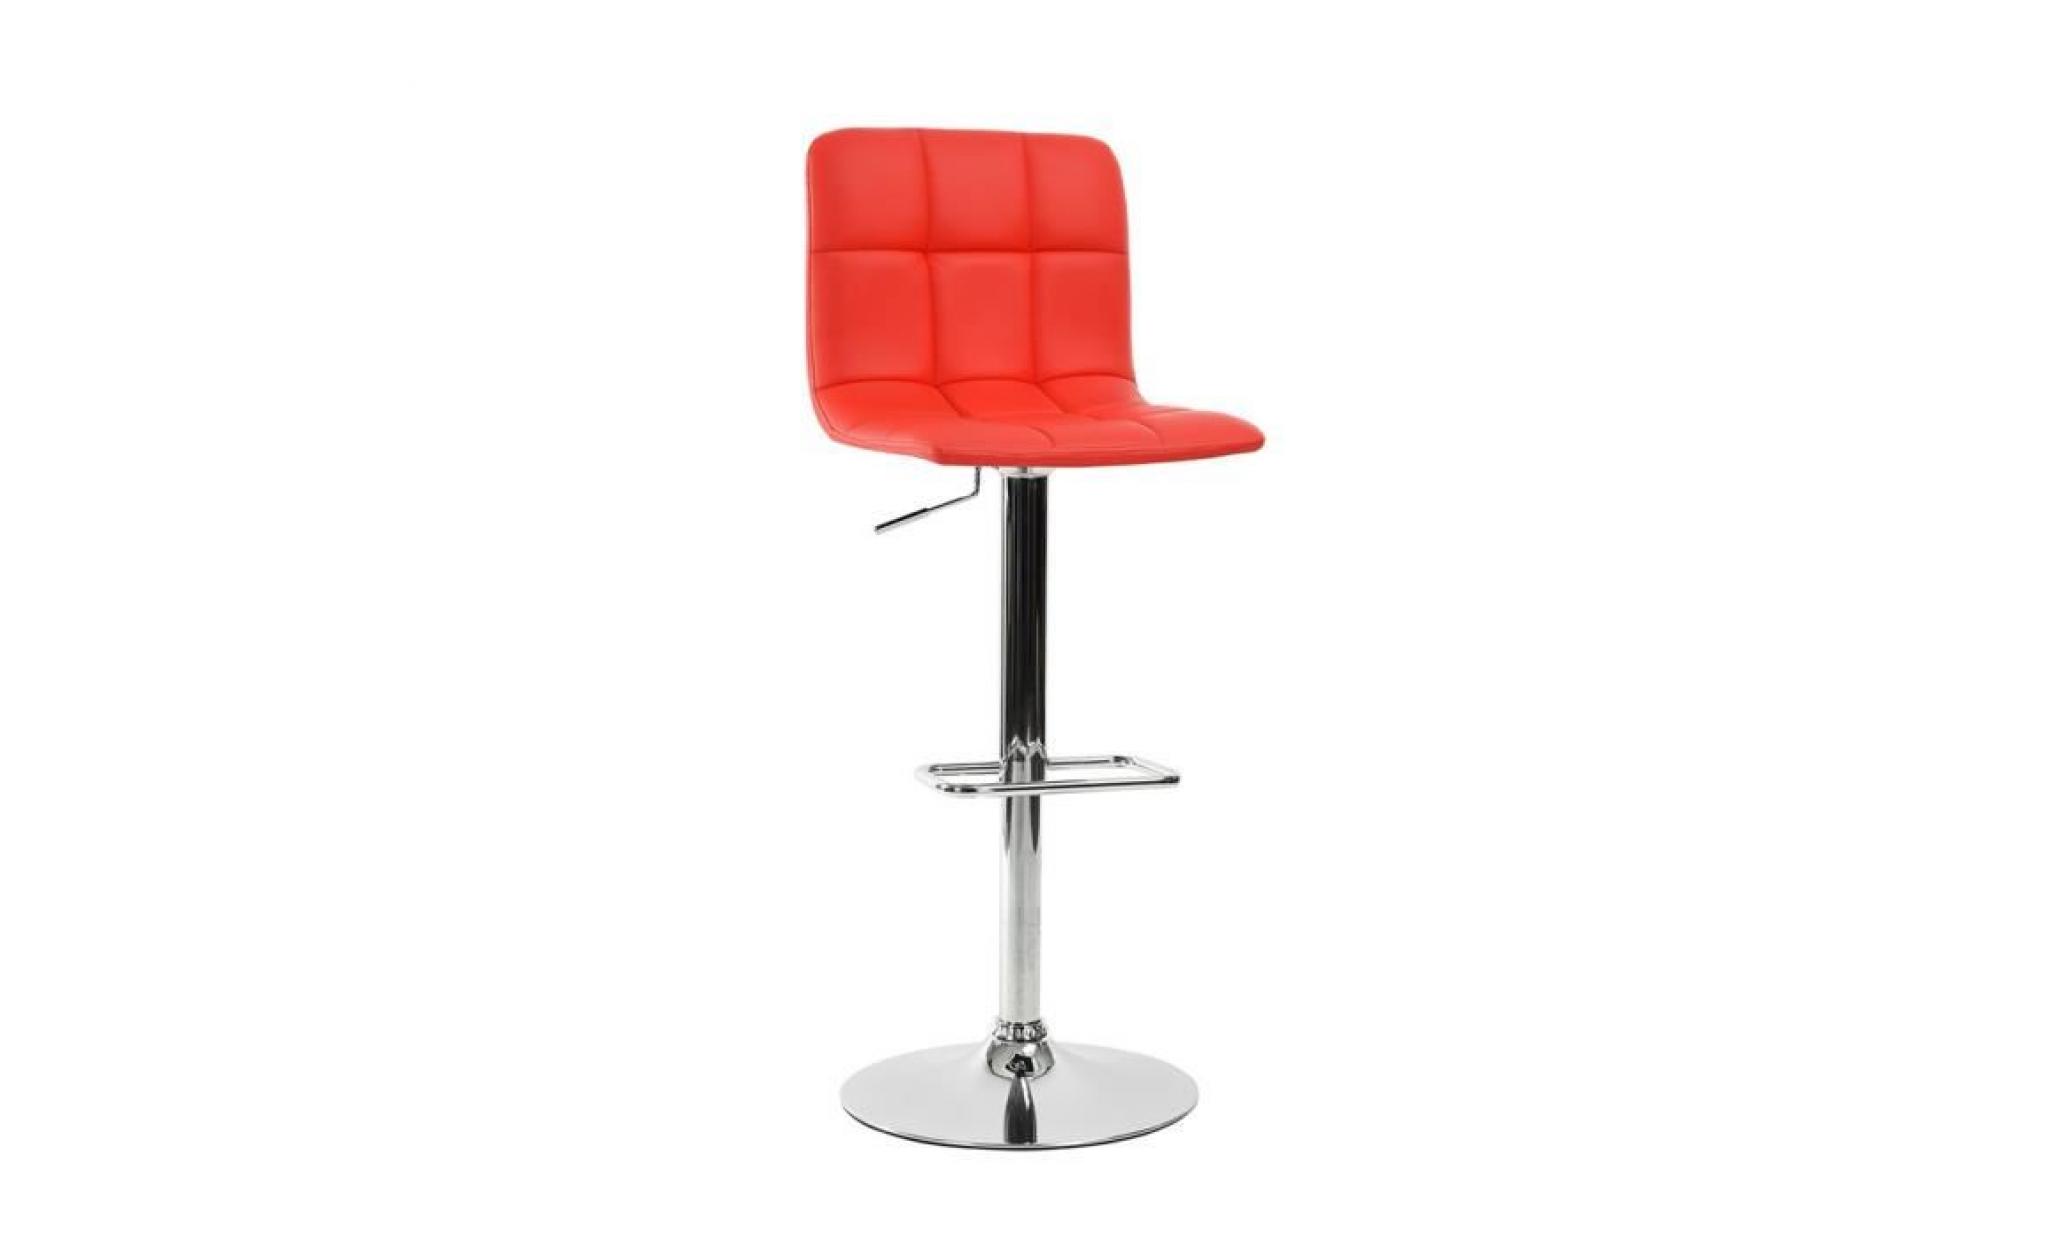 furnish 1 tabouret de bar sans accoudoirs chaise haute siège réglable repose pied métal chromé simili cuir pu rouge salle à manger